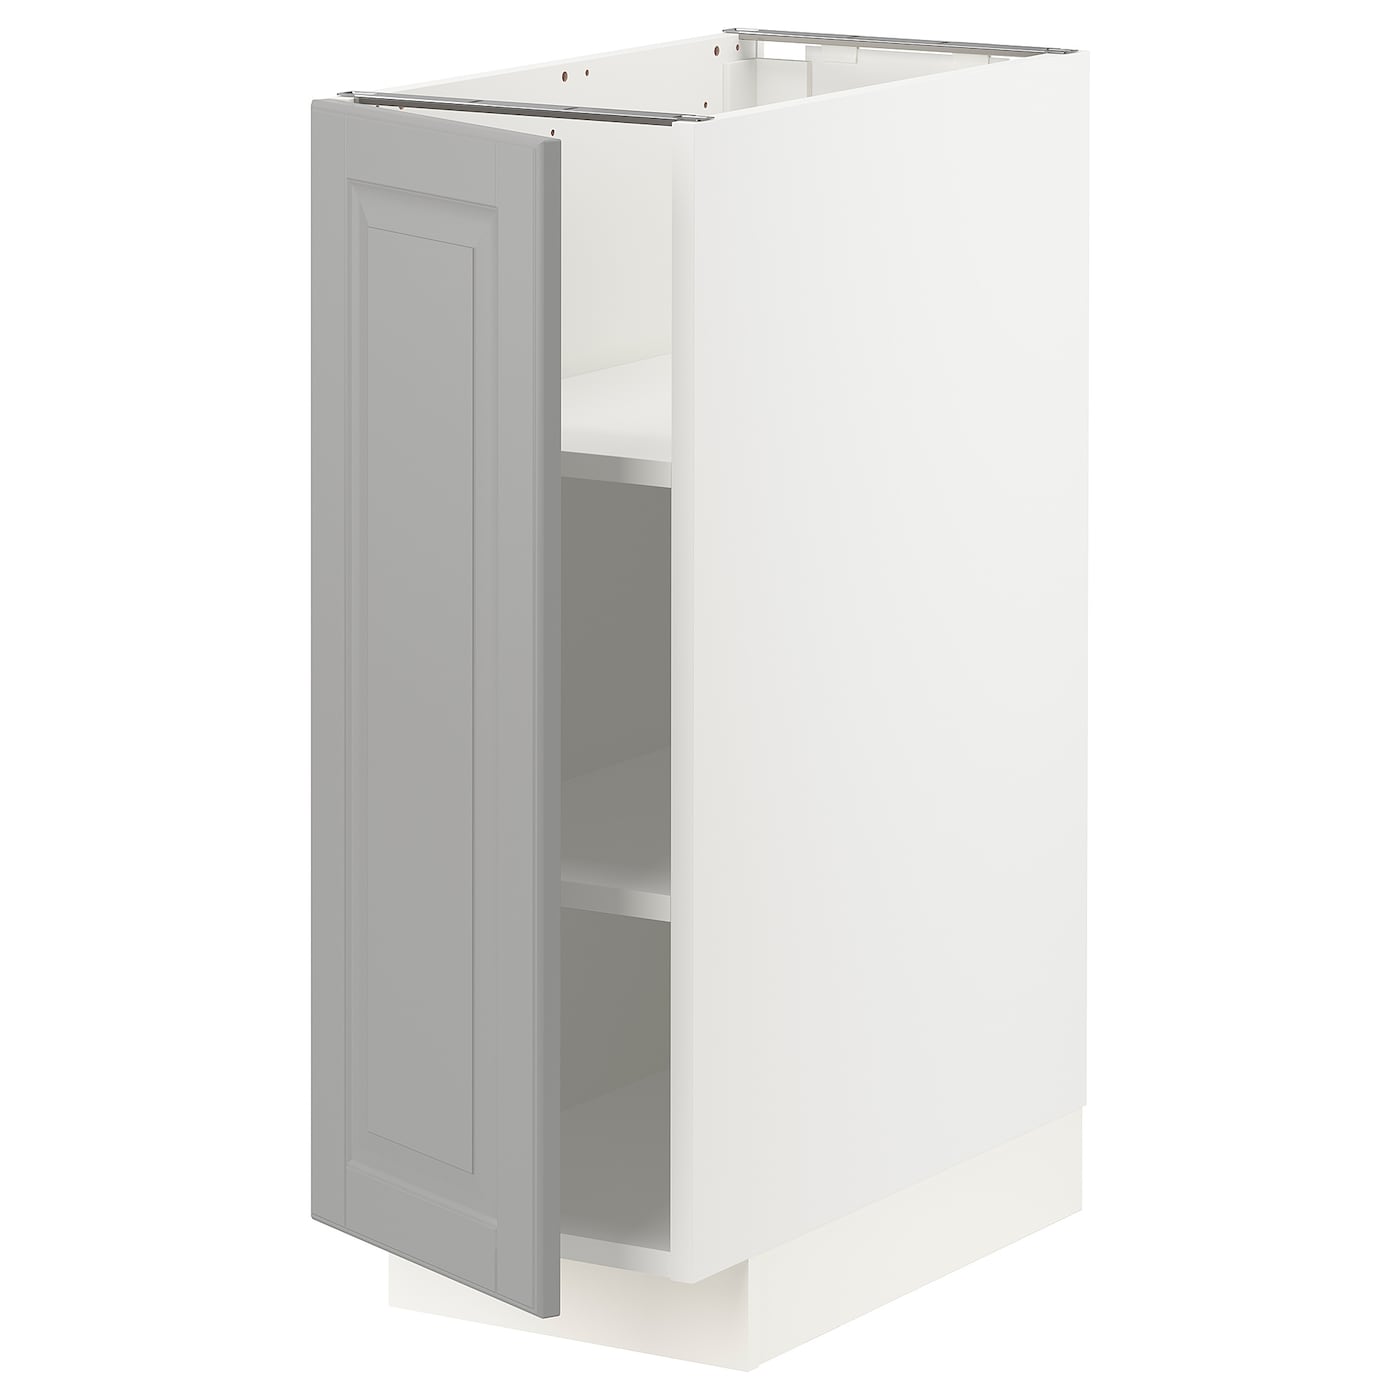 Напольный шкаф - IKEA METOD, 88x62x30см, белый/светло-серый, МЕТОД ИКЕА